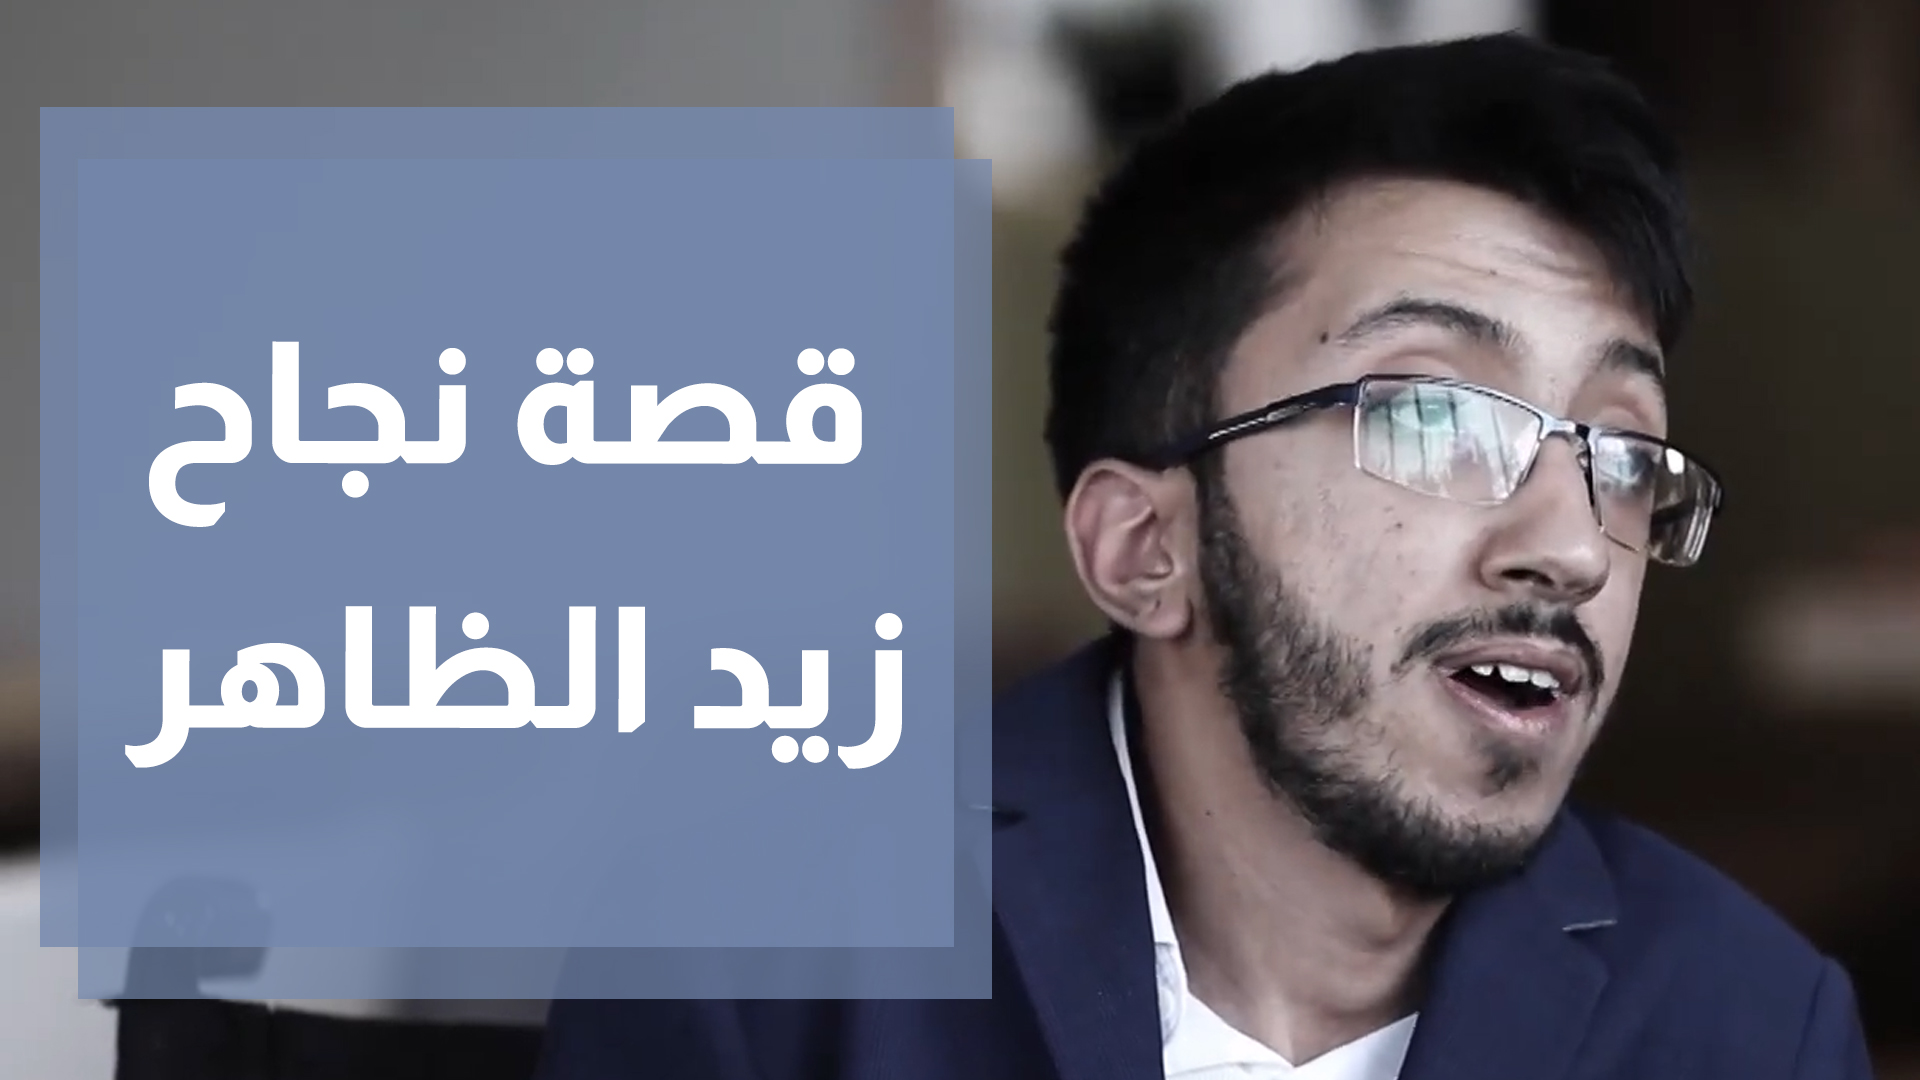 زياد الظاهر.. مدير إيرادات رغم الكرسي المتحرك الذي يعيق حركته